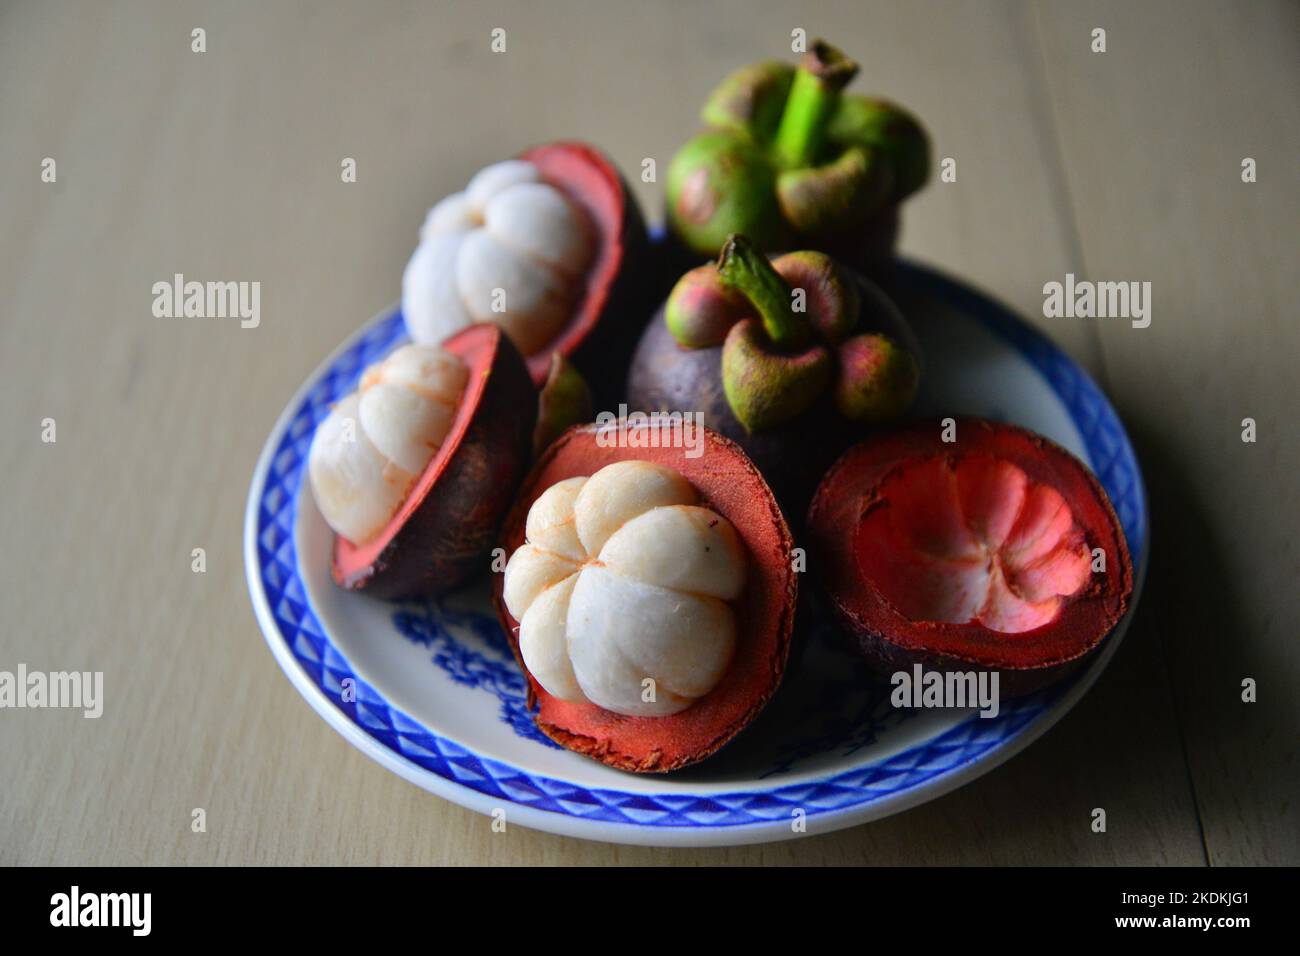 Une assiette de mangousteen, fruits thaïlandais au goût agréable Banque D'Images